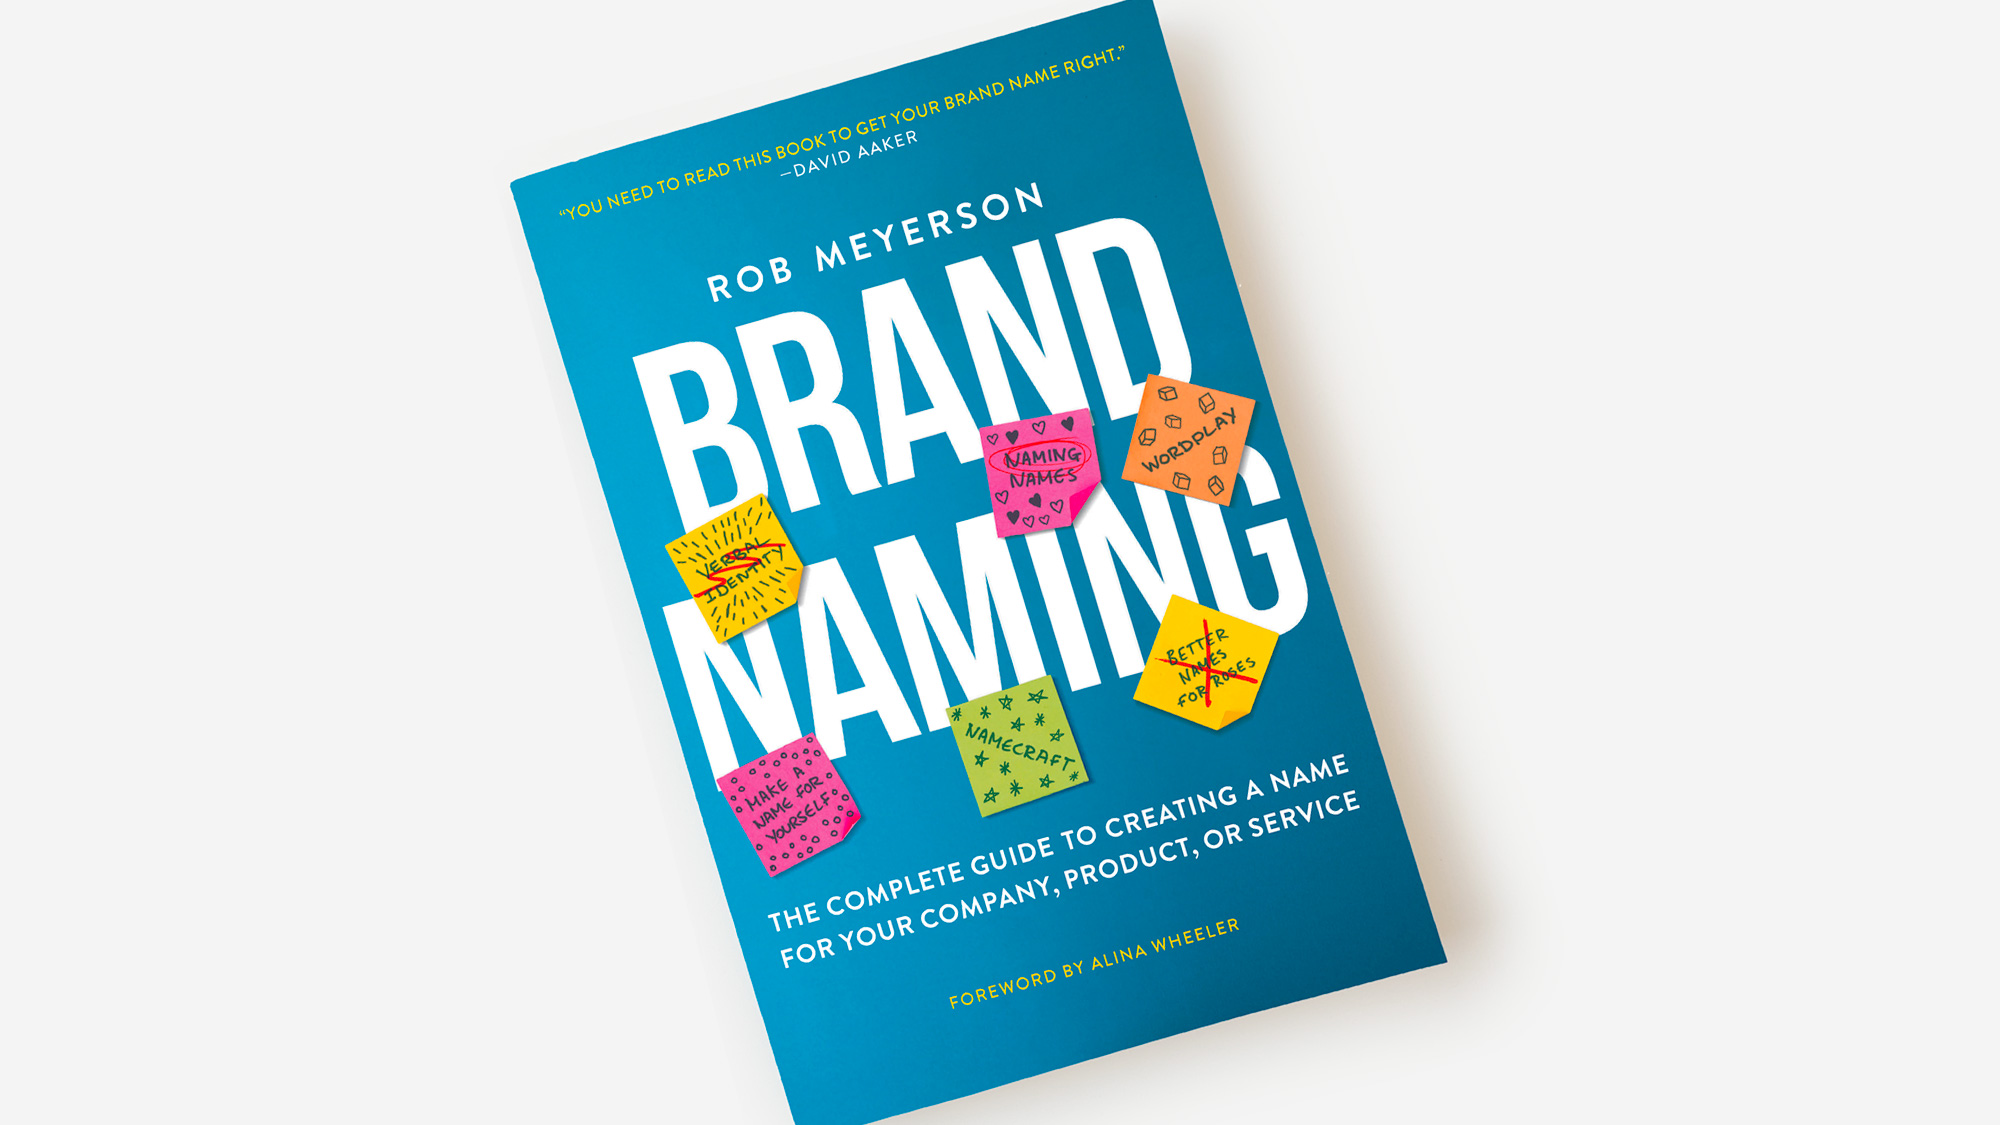 “Brand Naming” Book